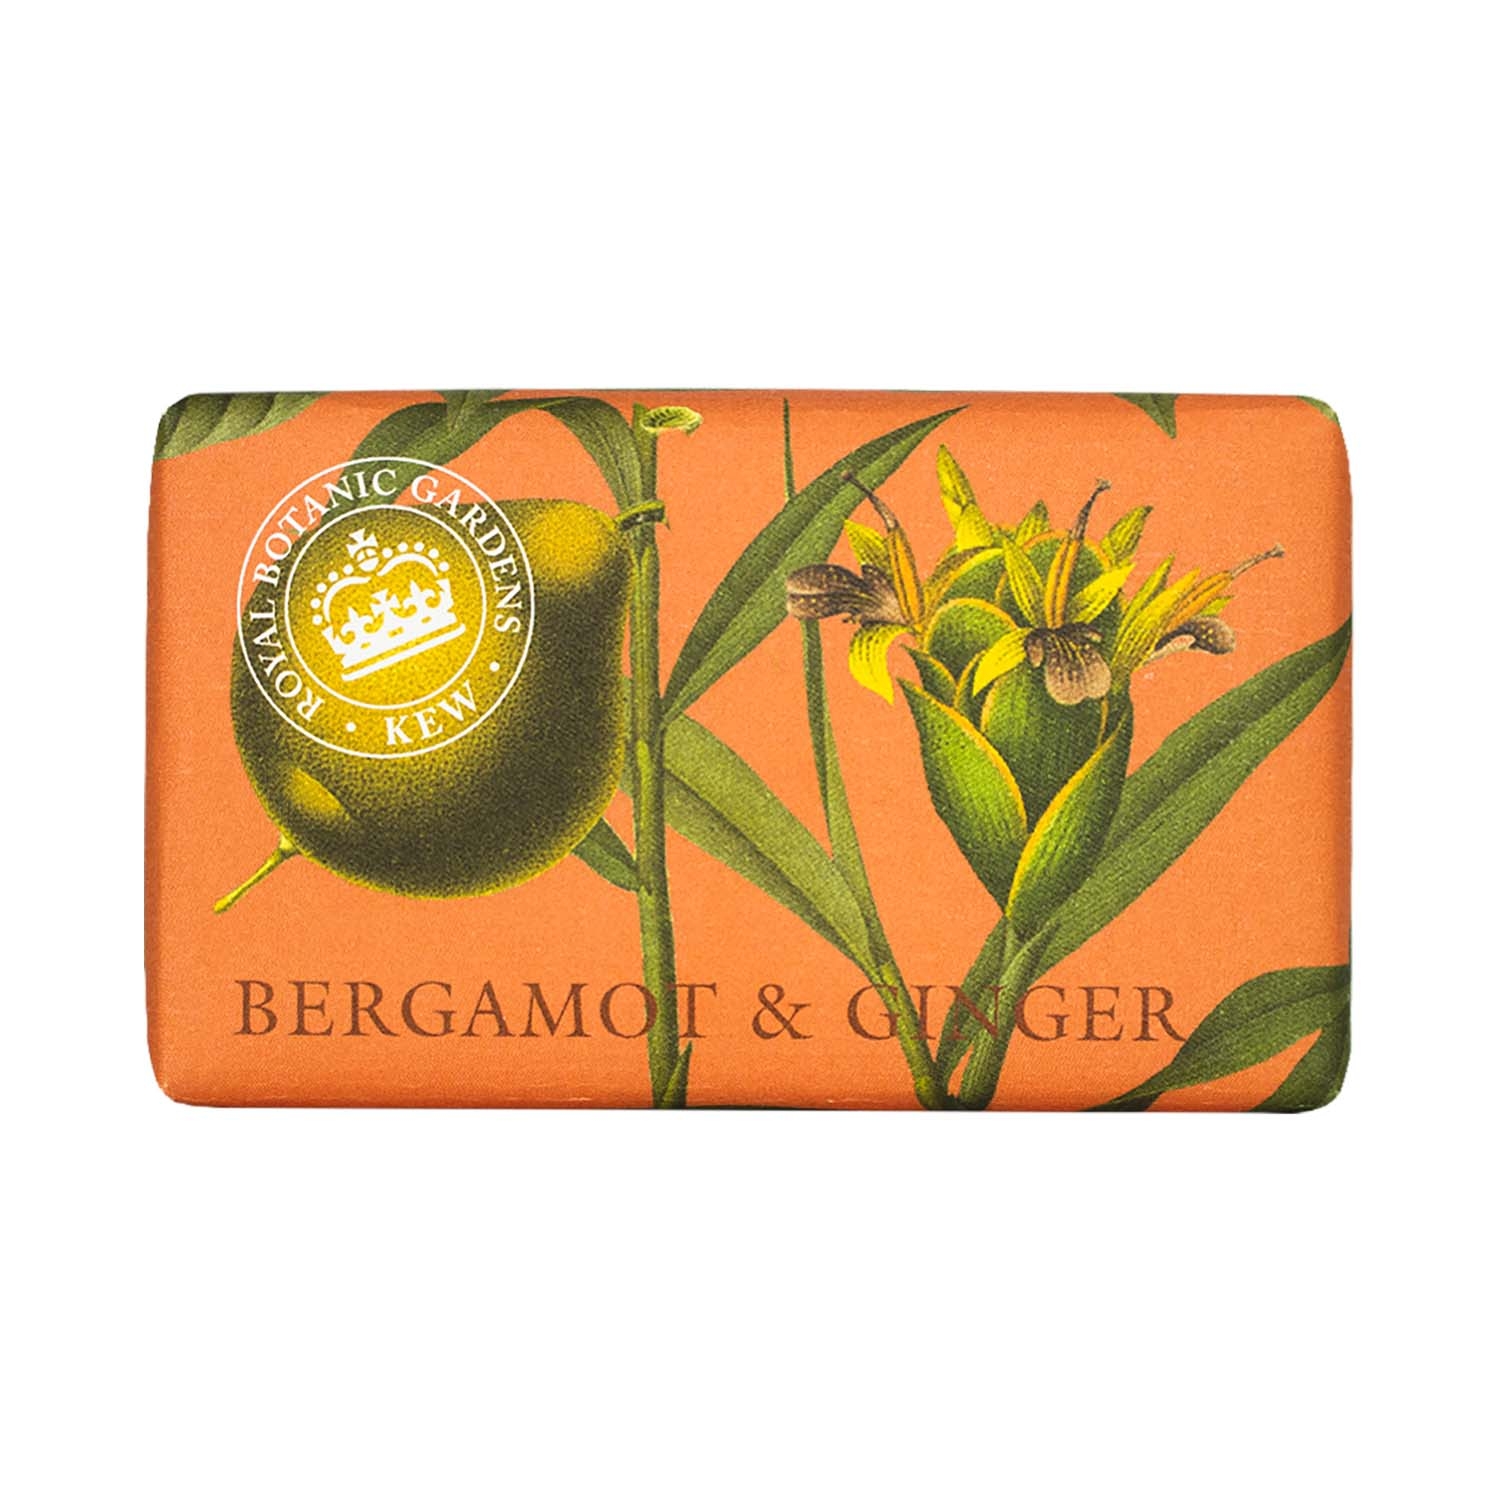 The English Soap Company | The English Soap Company Royal Botanic Gardens Kew Bergamot & Ginger Soap (240g)